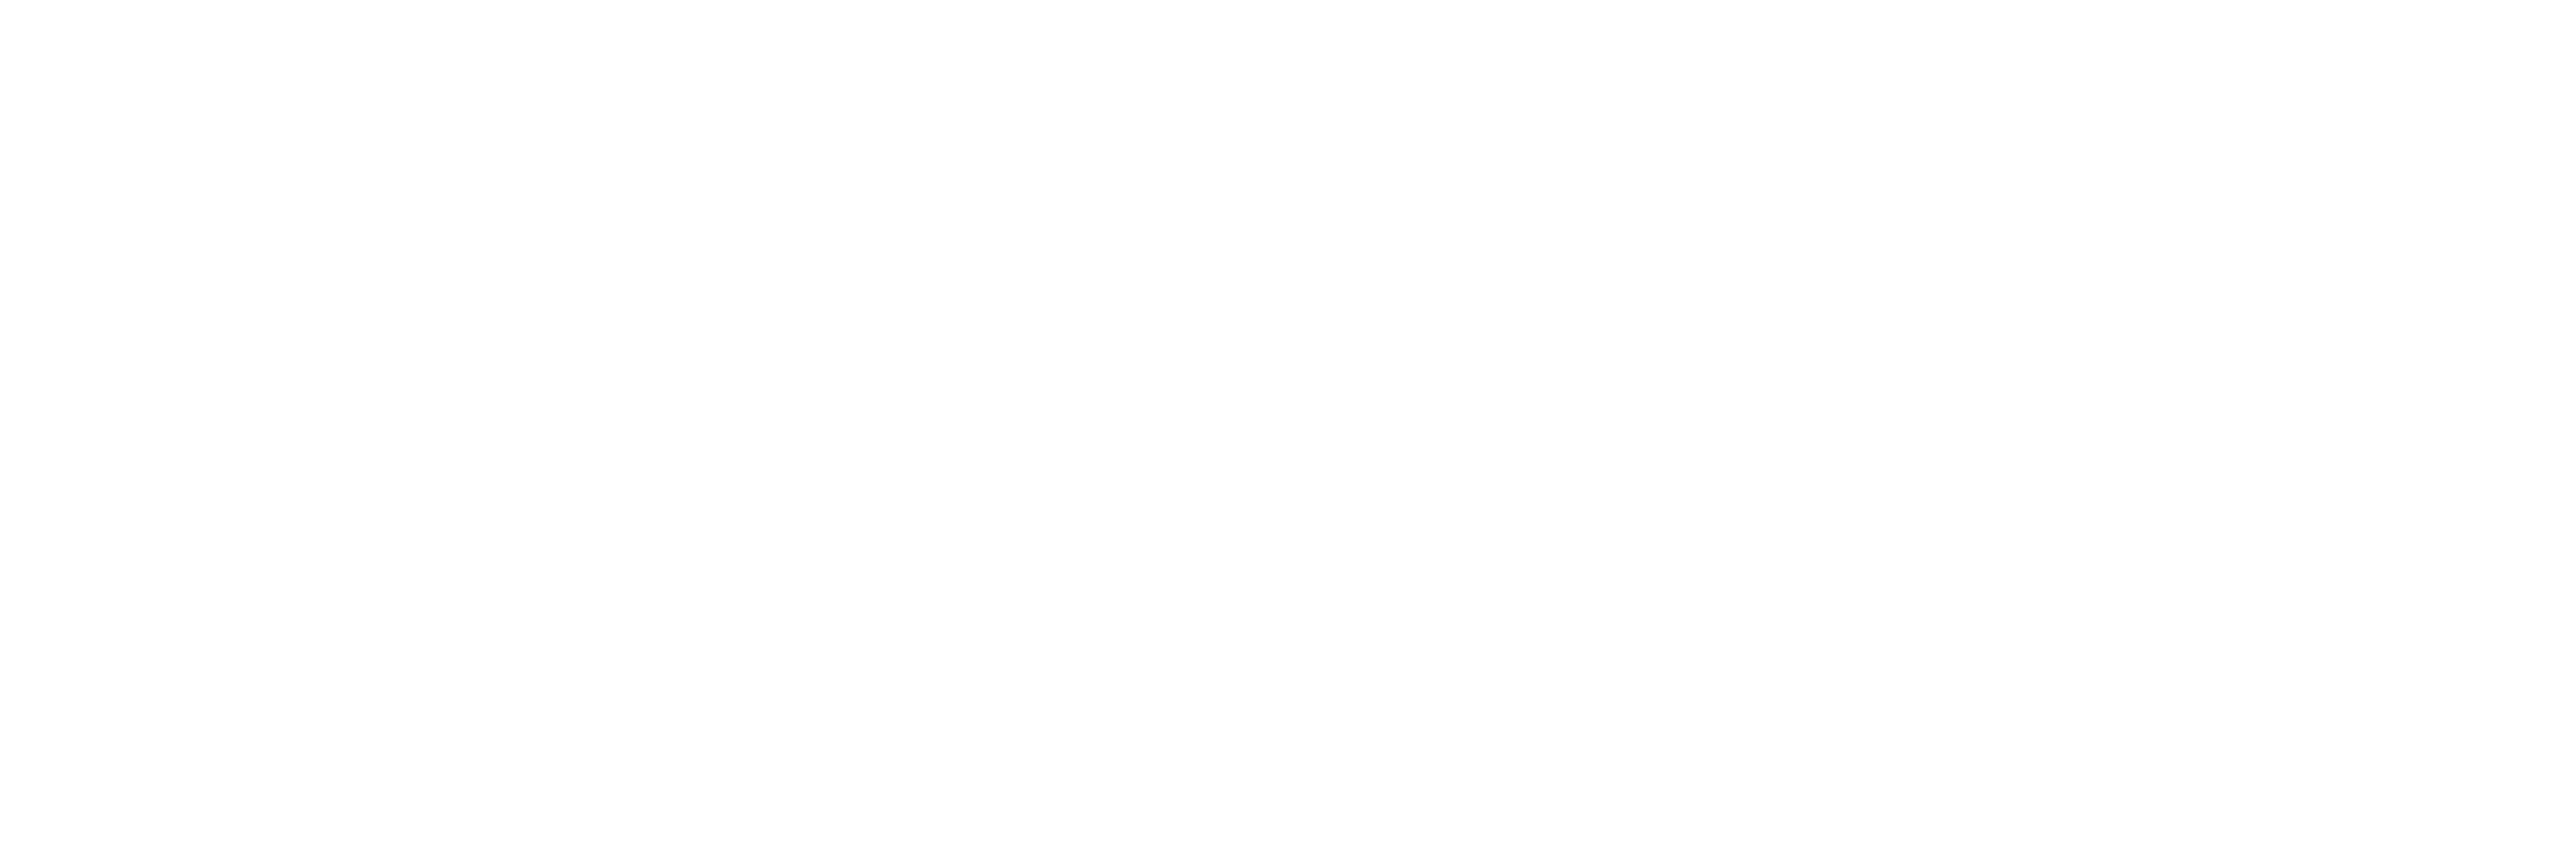 Oak Street Barn